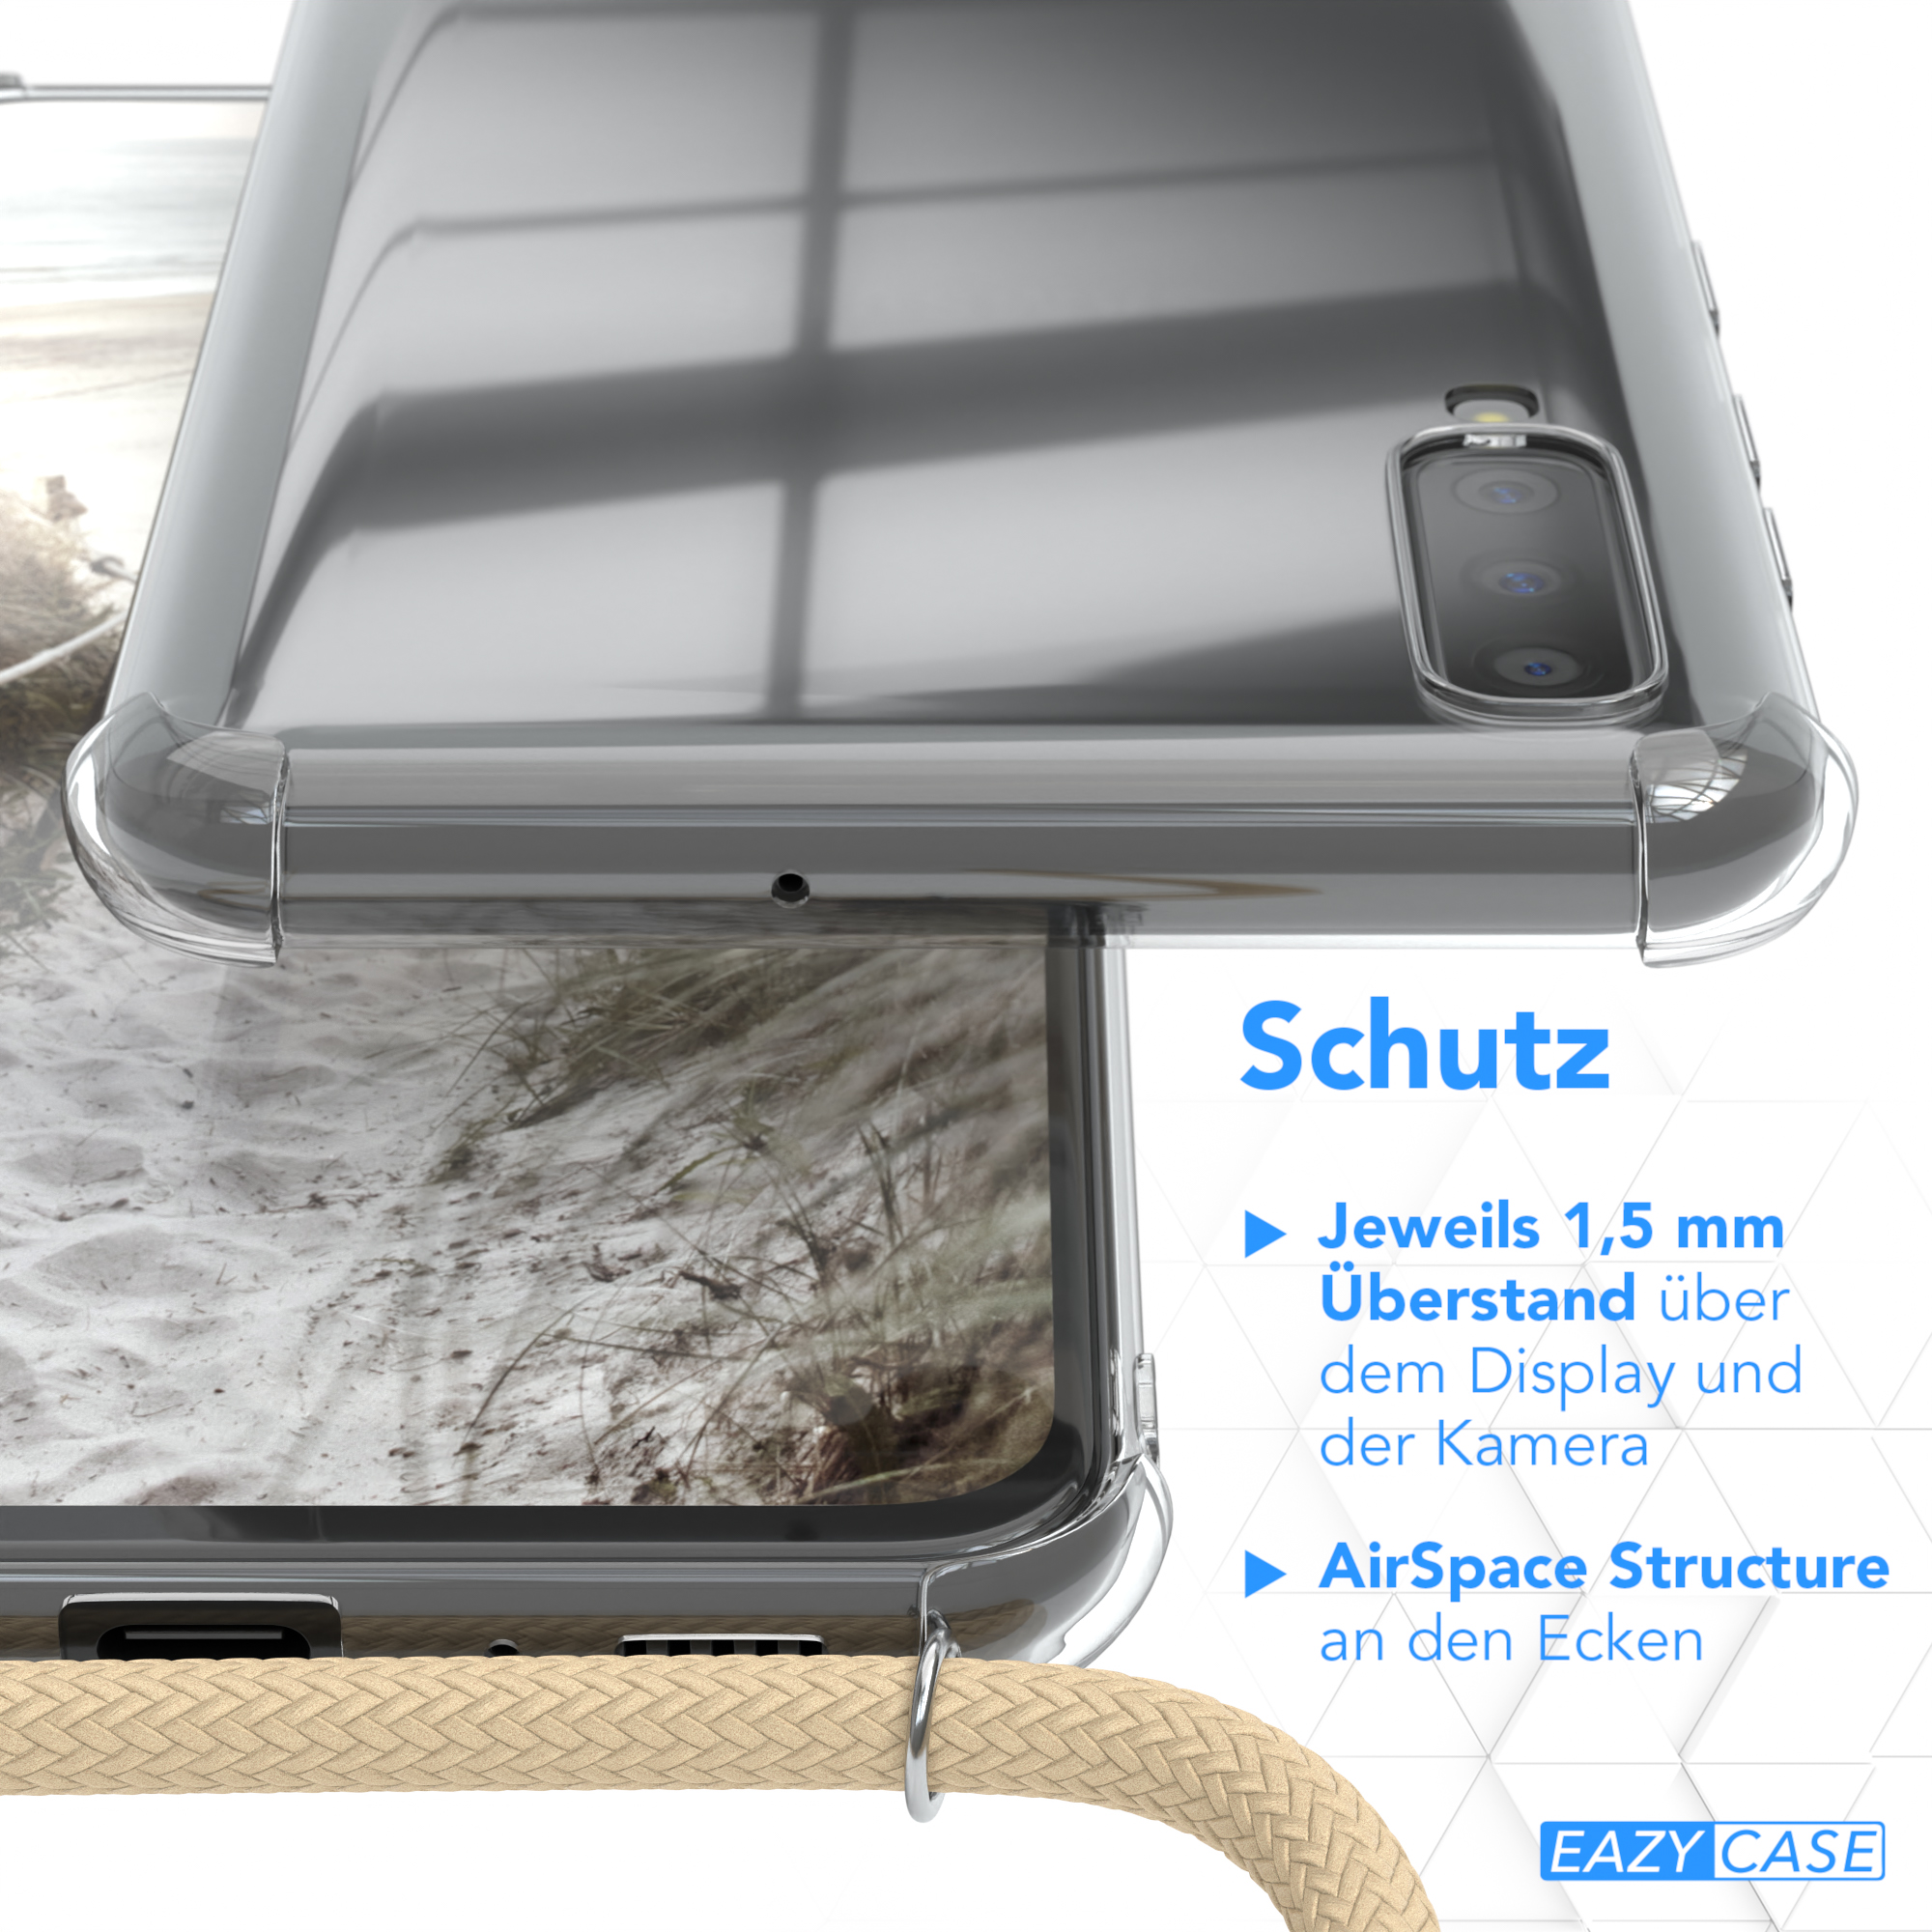 EAZY Clear CASE A70, Beige mit Taupe Cover Umhängetasche, Umhängeband, Galaxy Samsung,